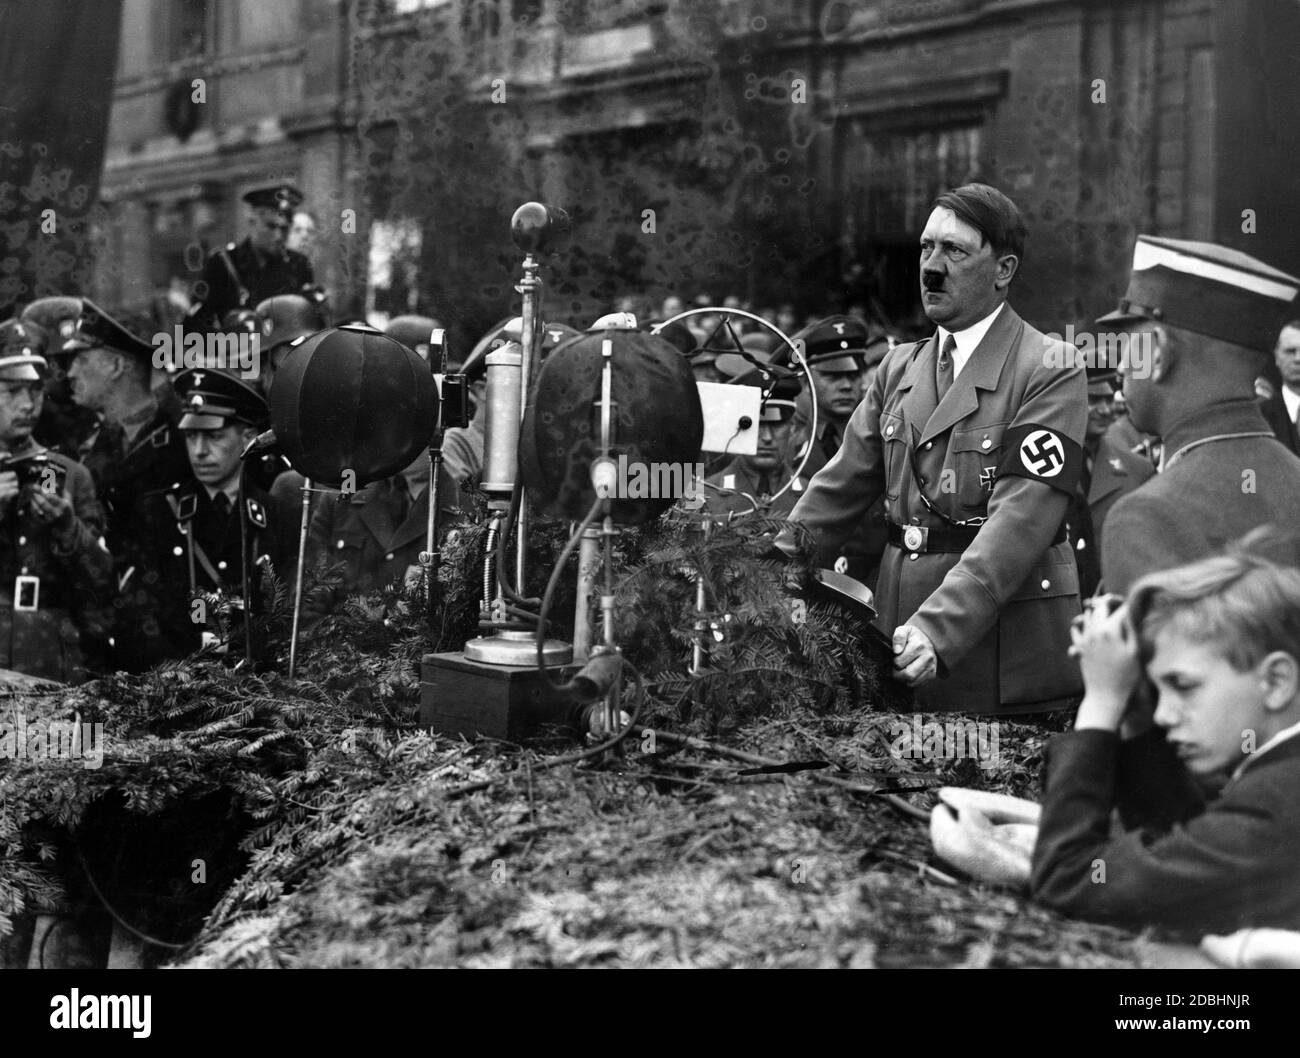 L'image de propagande socialiste nationale montre Adolf Hitler pendant son discours à la jeunesse allemande lors du rassemblement dans le Lustgarten de Berlin le 1er mai 1934, la fête nationale du peuple allemand. Photo: Collection Berliner Verlag Archiv / Sennecke Banque D'Images